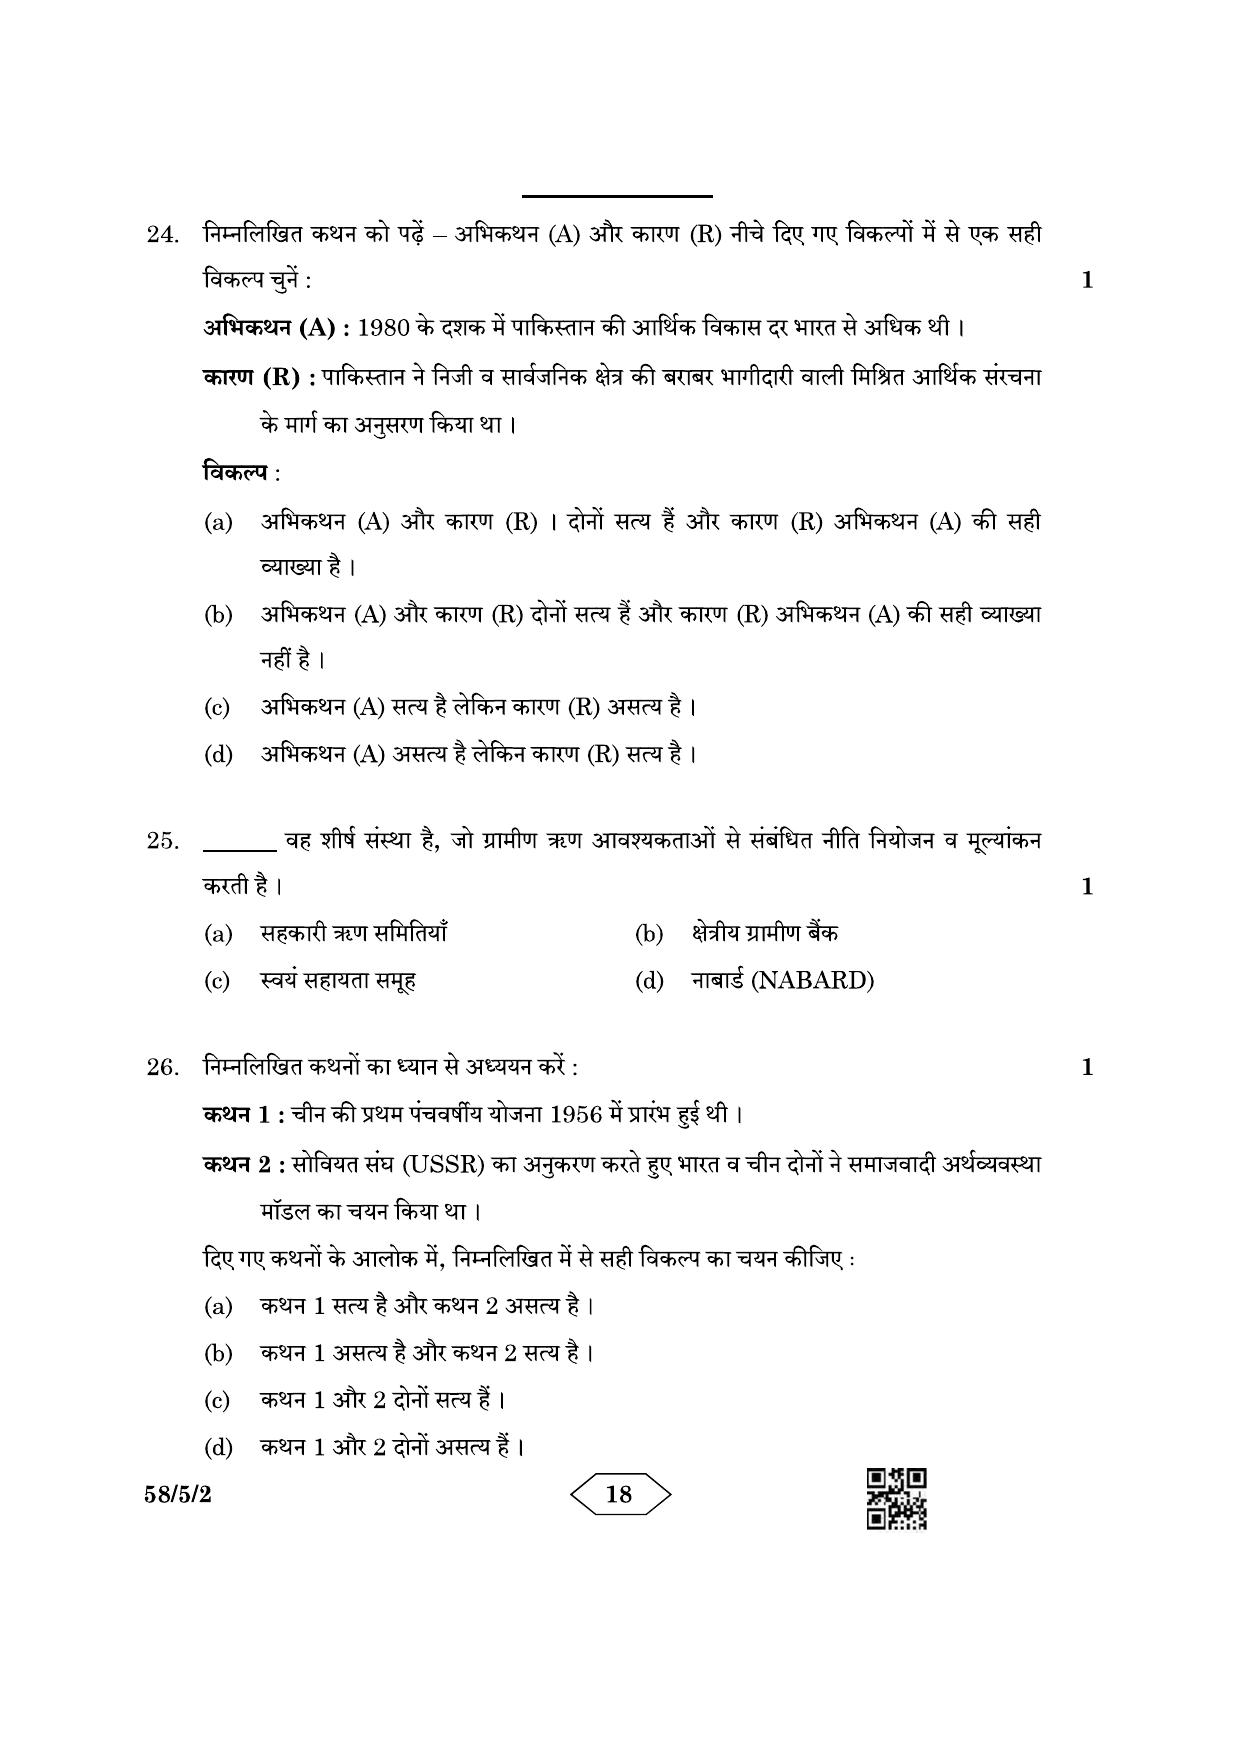 CBSE Class 12 58-5-2 Economics 2023 Question Paper - Page 18